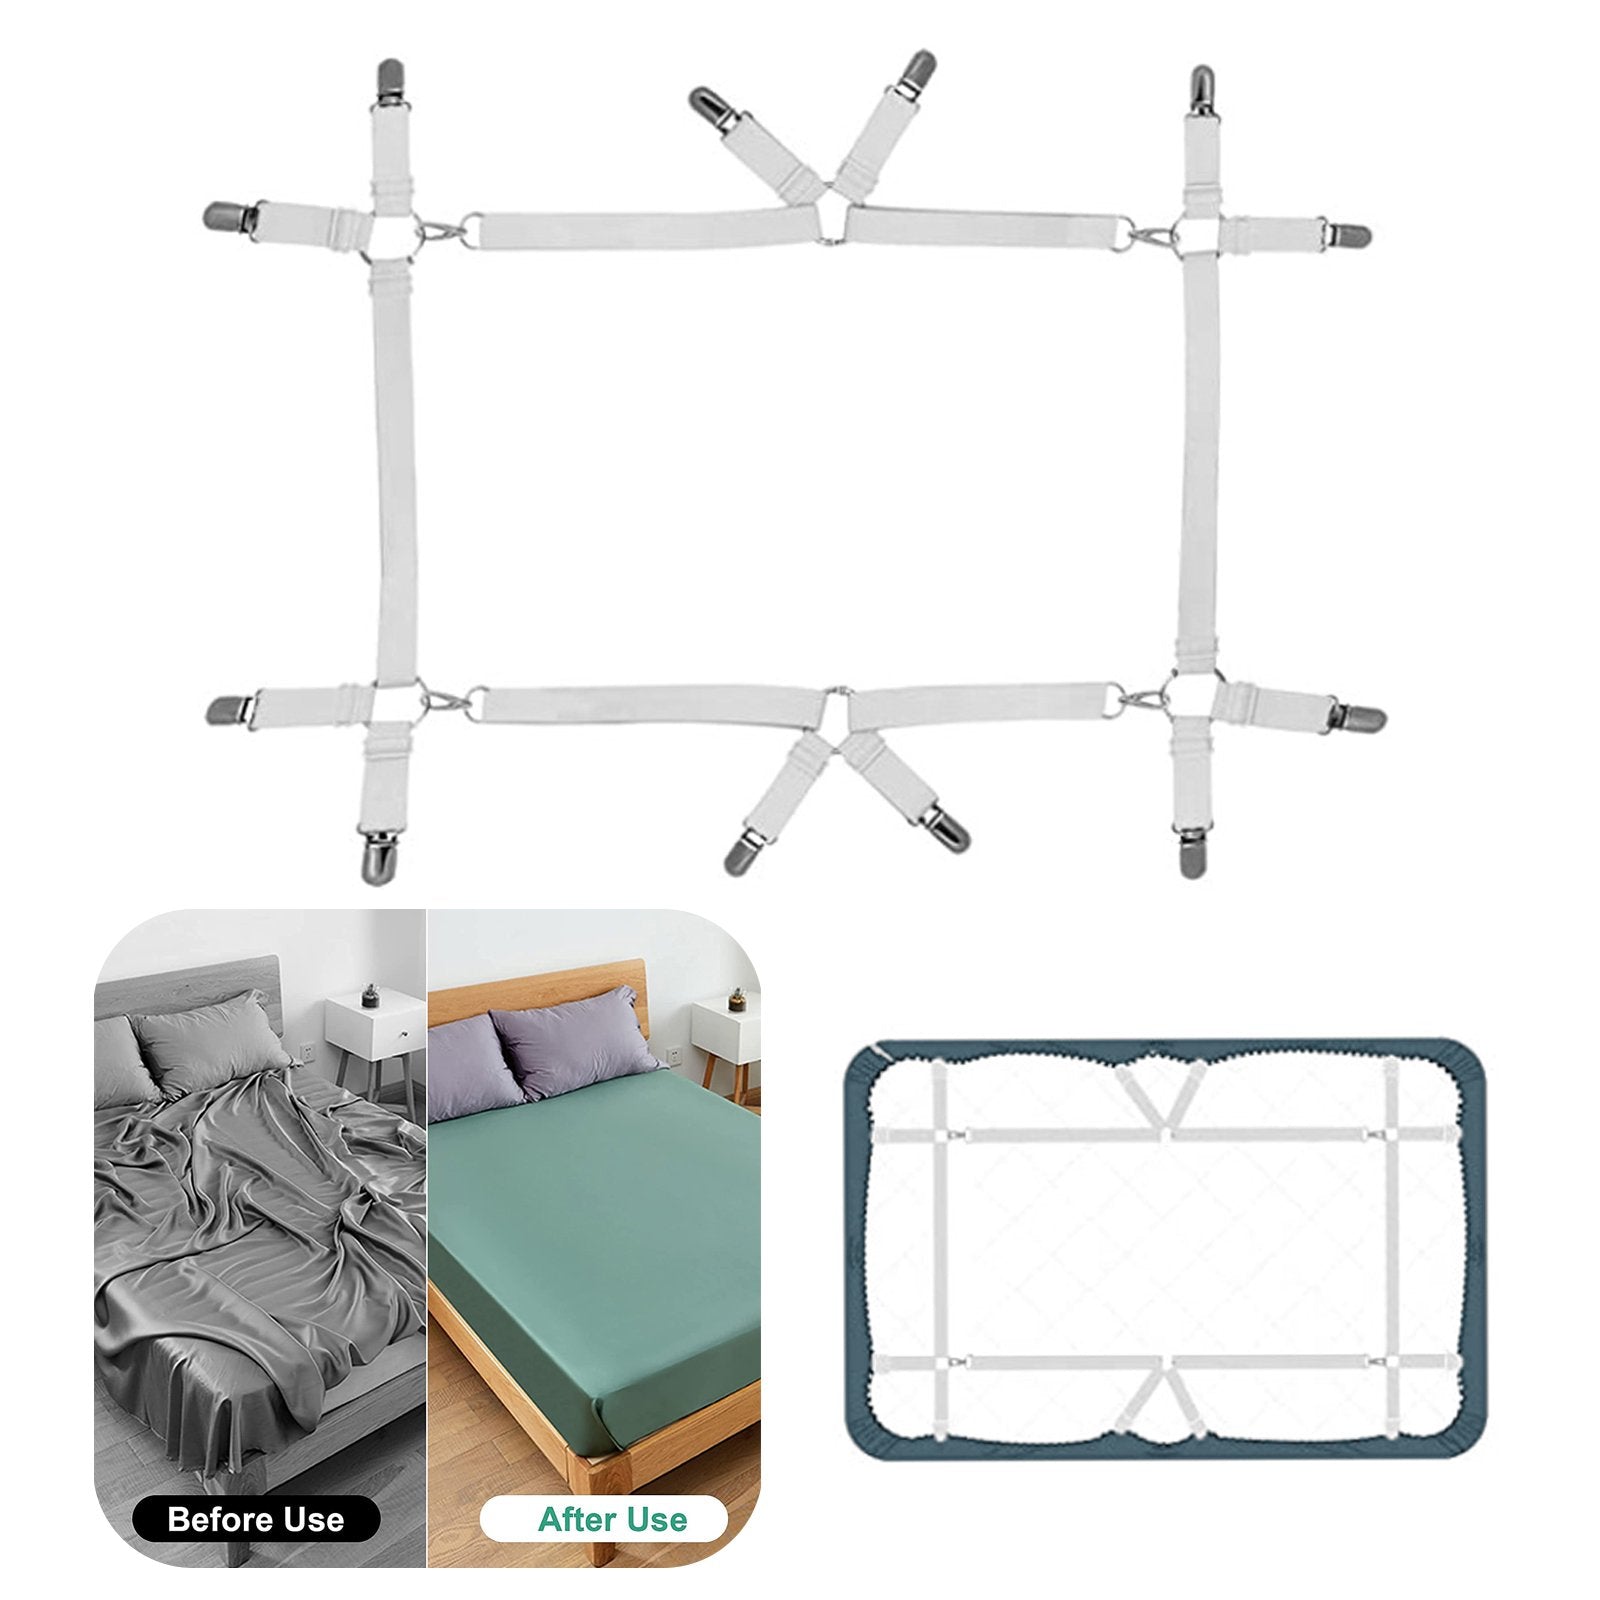 Bed Sheet Holder Straps, Adjustable Bed Sheet Fastener and